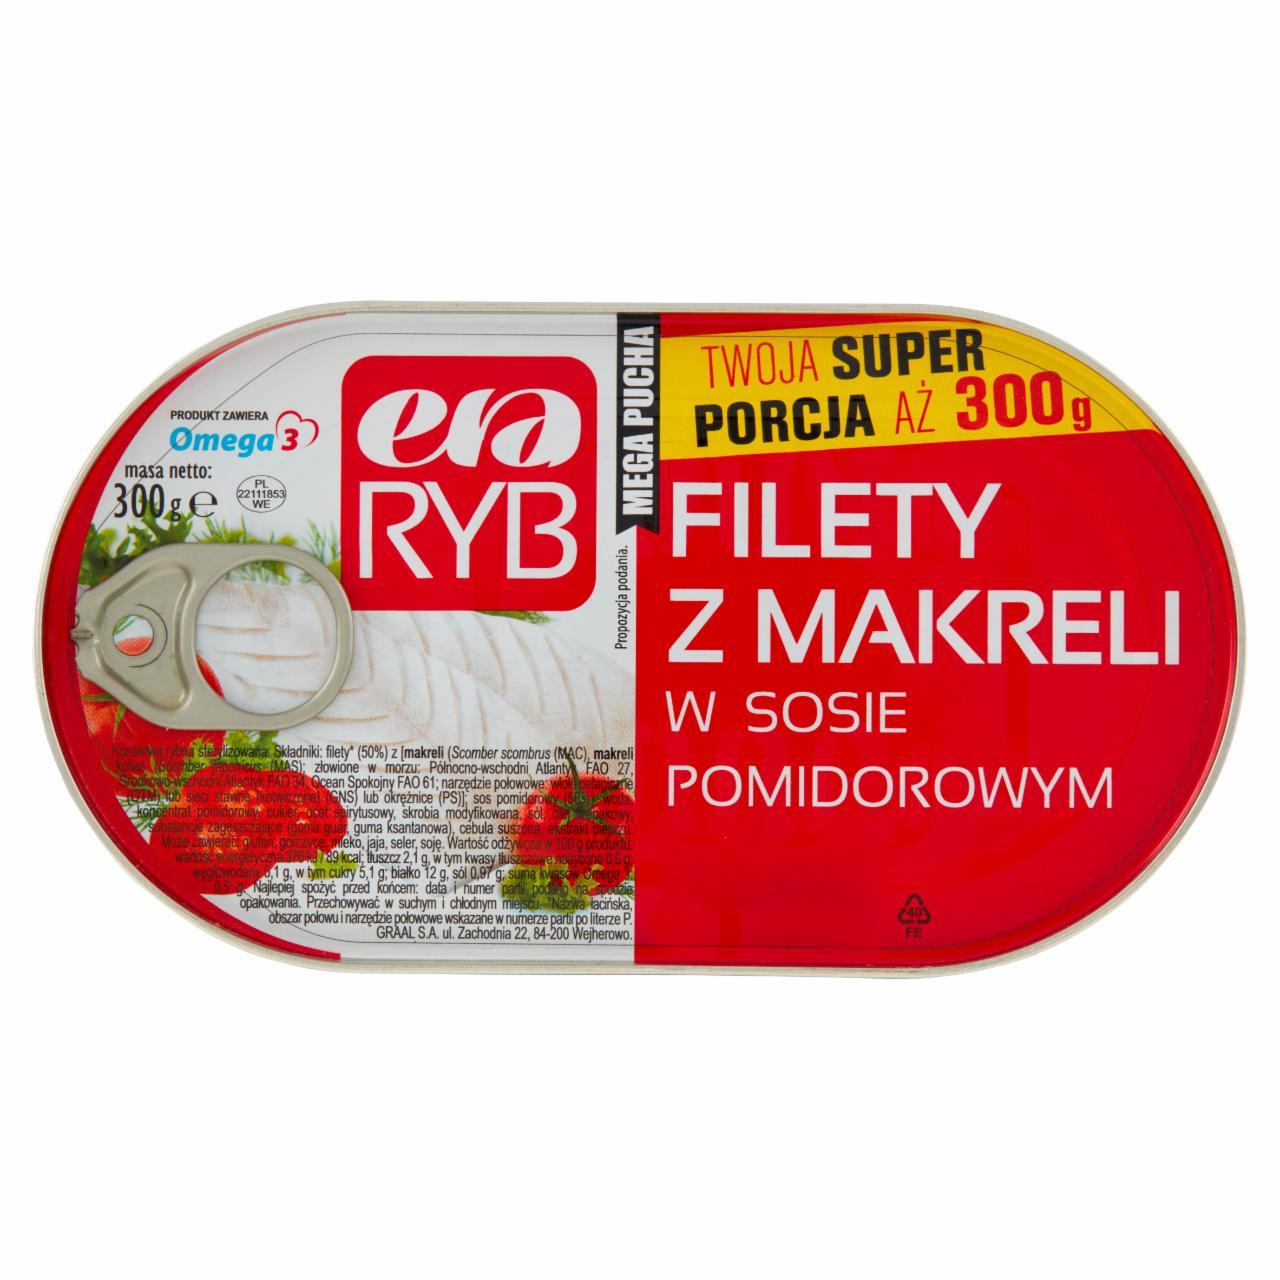 Zdjęcia - Era Ryb Filety z makreli w sosie pomidorowym 300 g